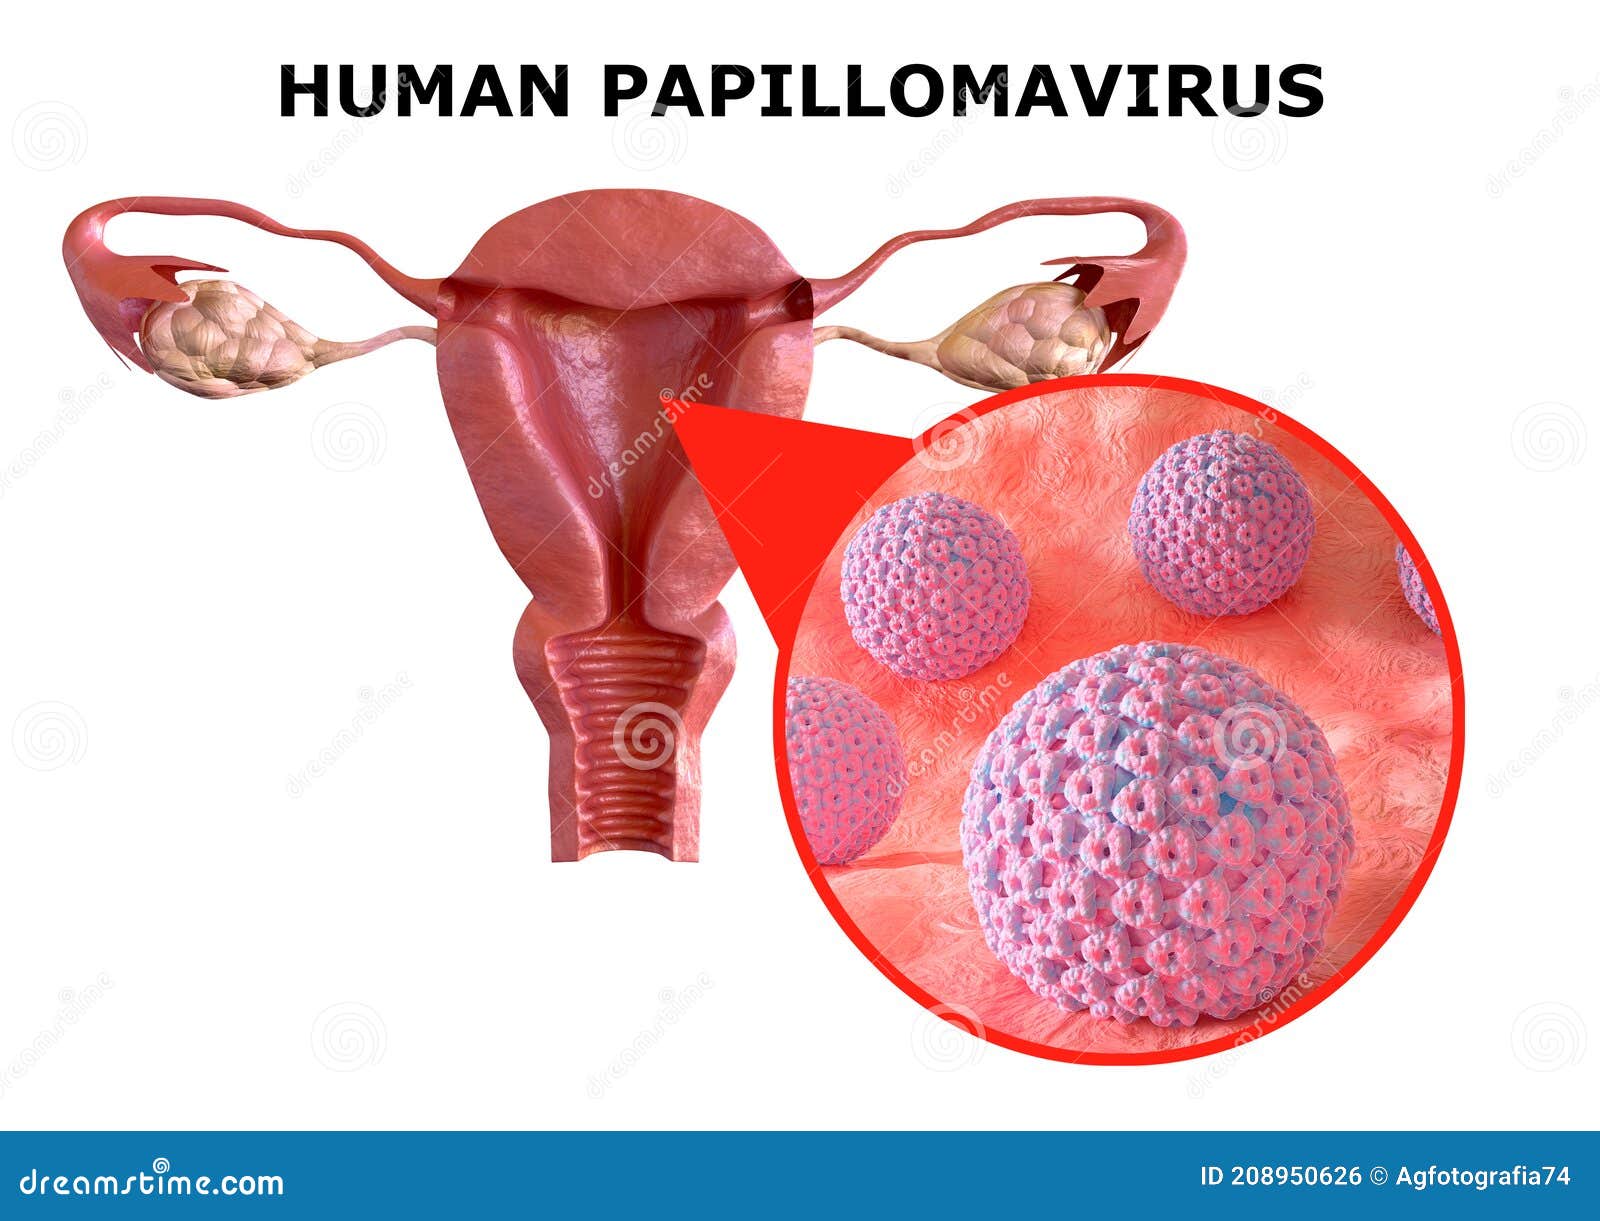 human papillomavirus infection types of warts colon help germania